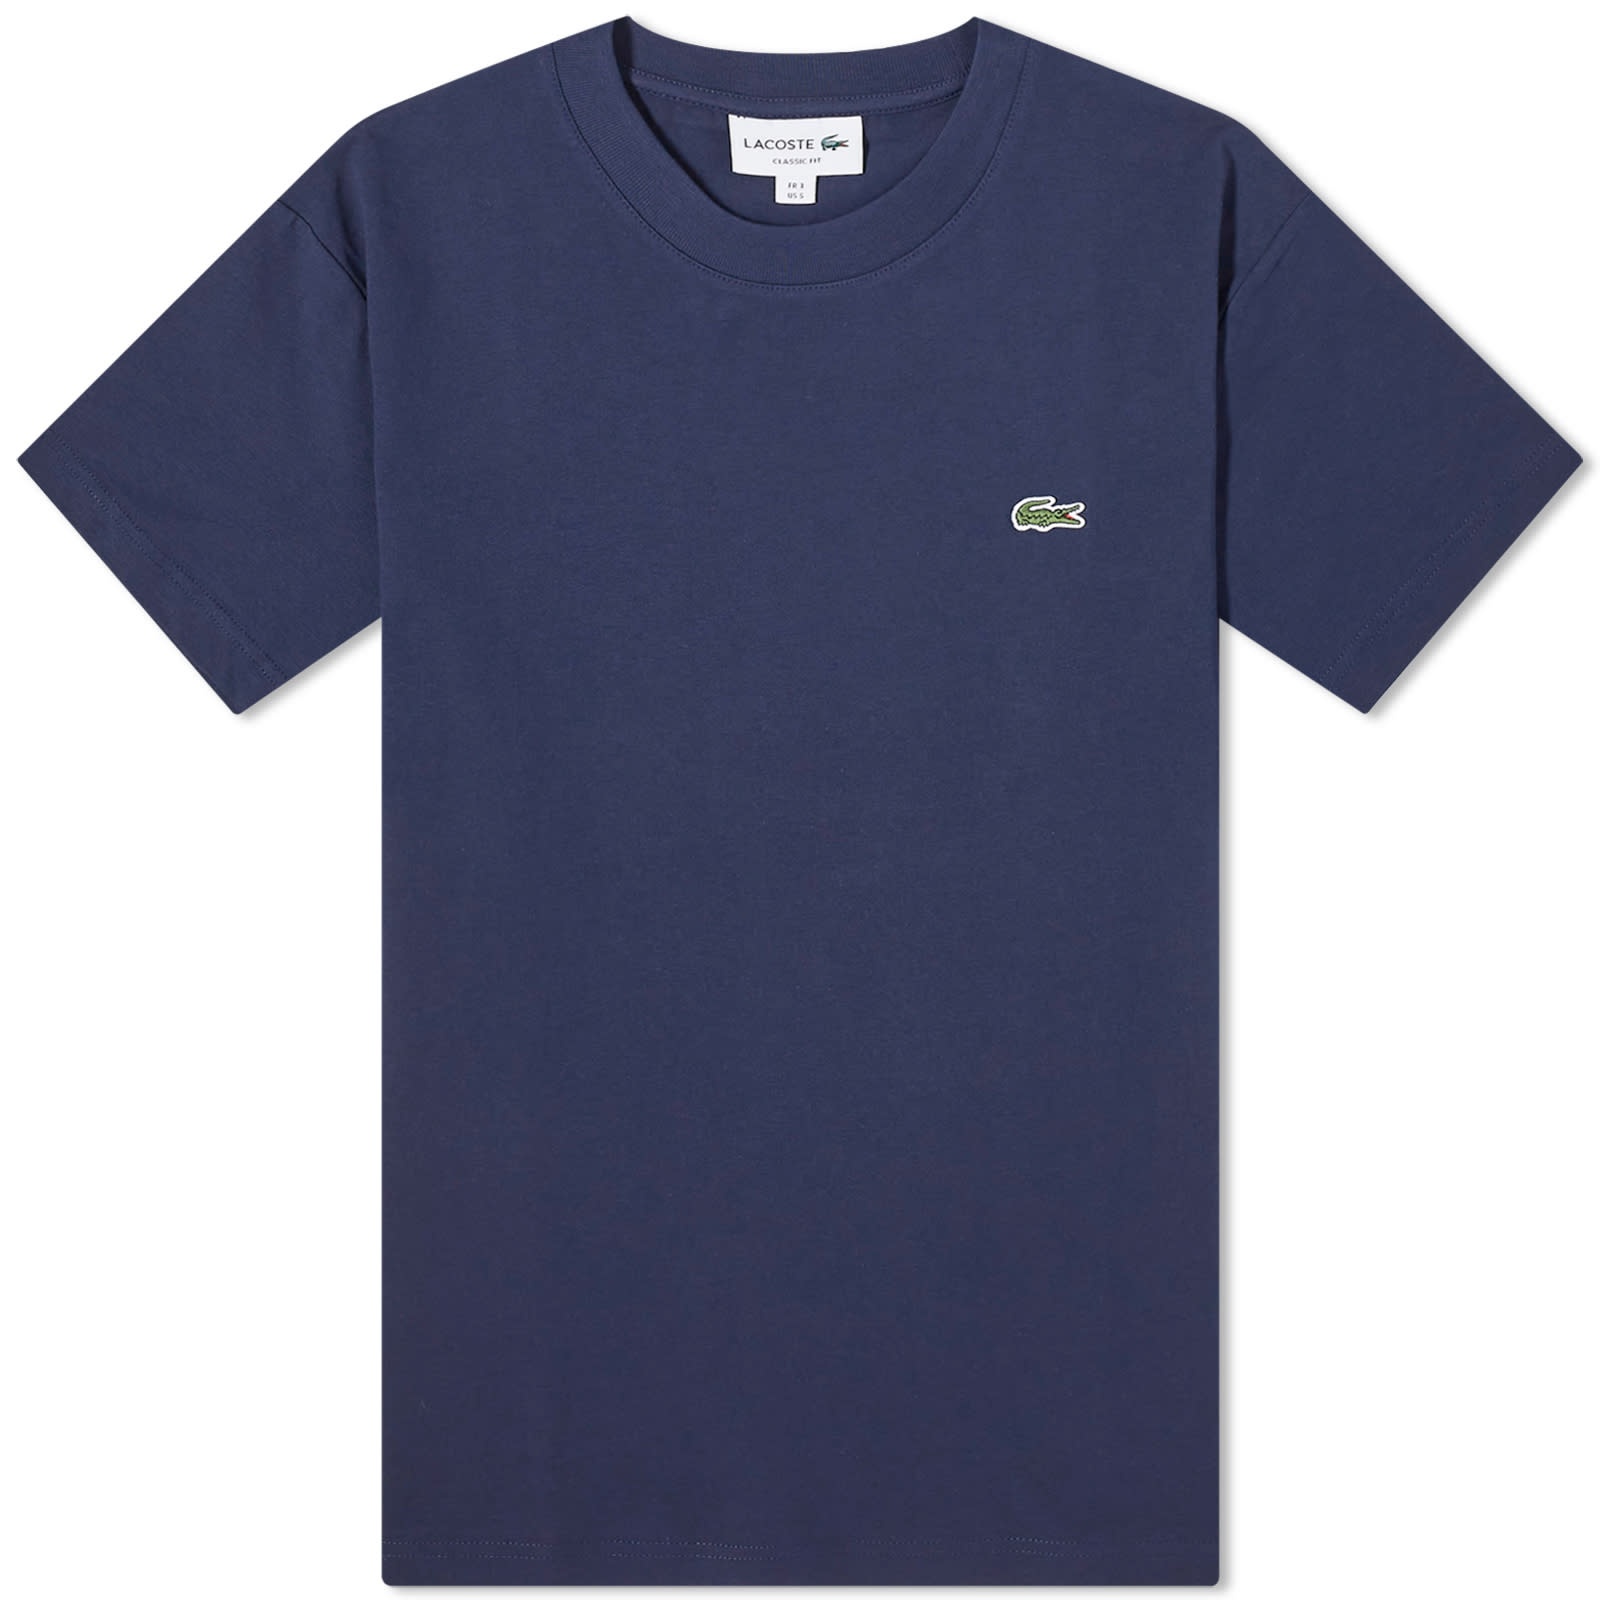 Lacoste Classic Cotton T-Shirt - 1